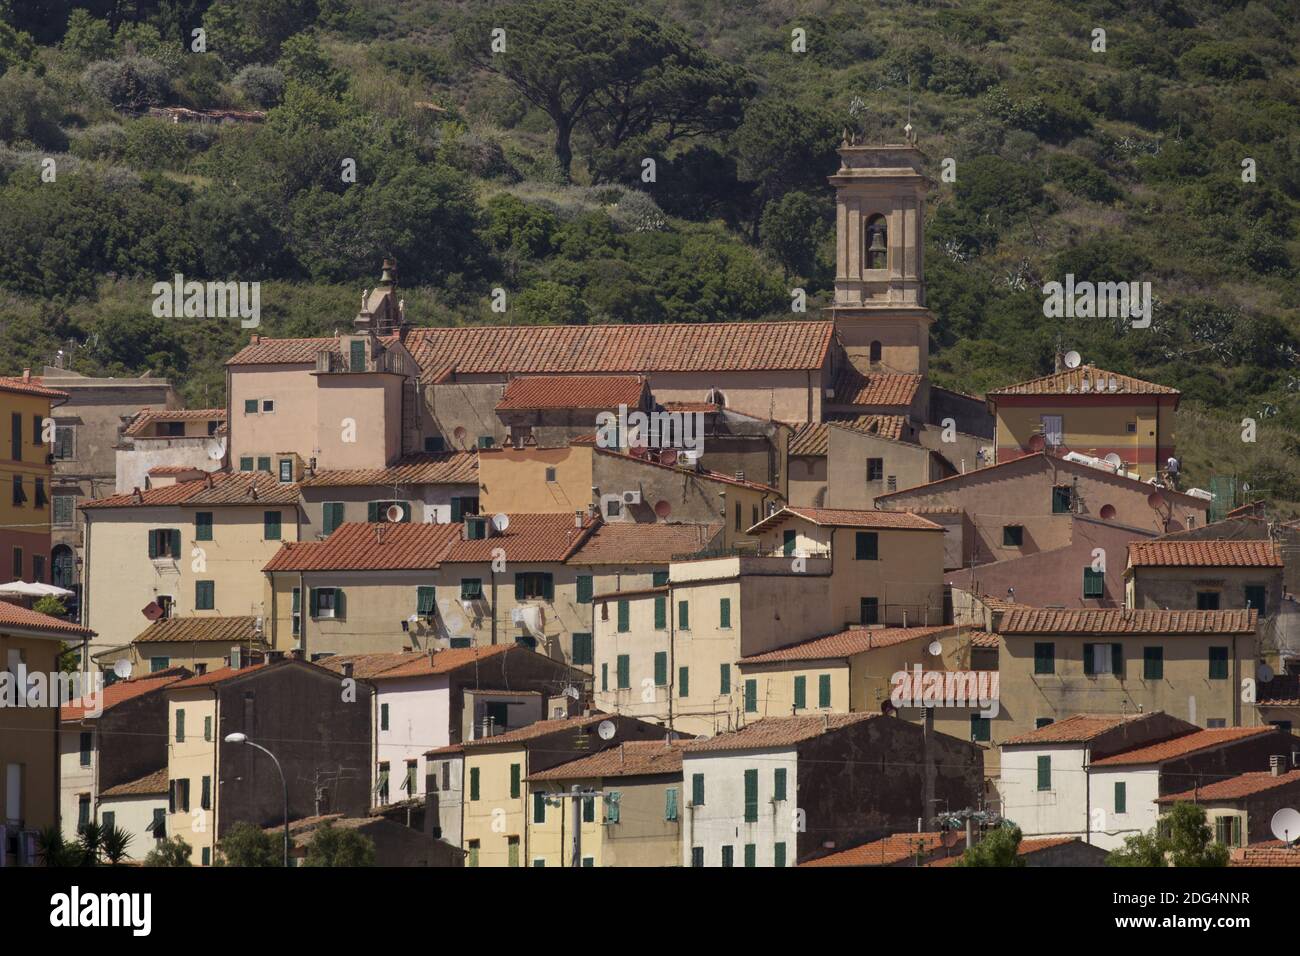 Rio nell Elba, village at a hill, Elba, Tuscany Stock Photo